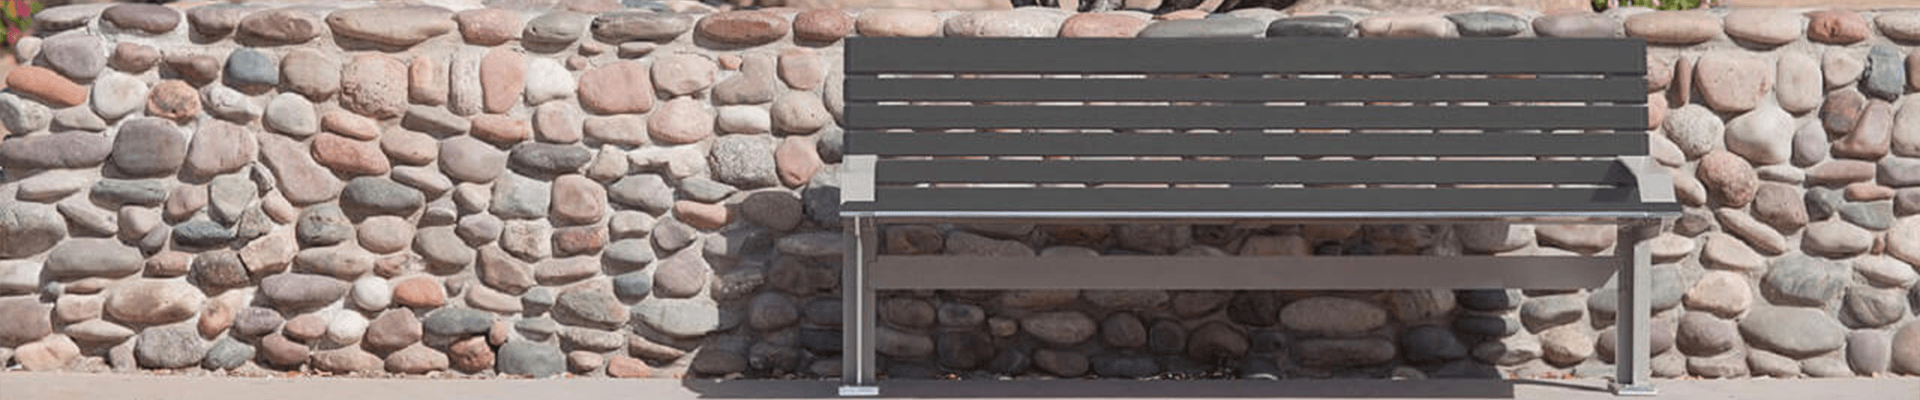 保安大叔2年画300余幅画美化公园-不锈钢公园椅,户外公园椅生产厂家-安博体育电竞ios